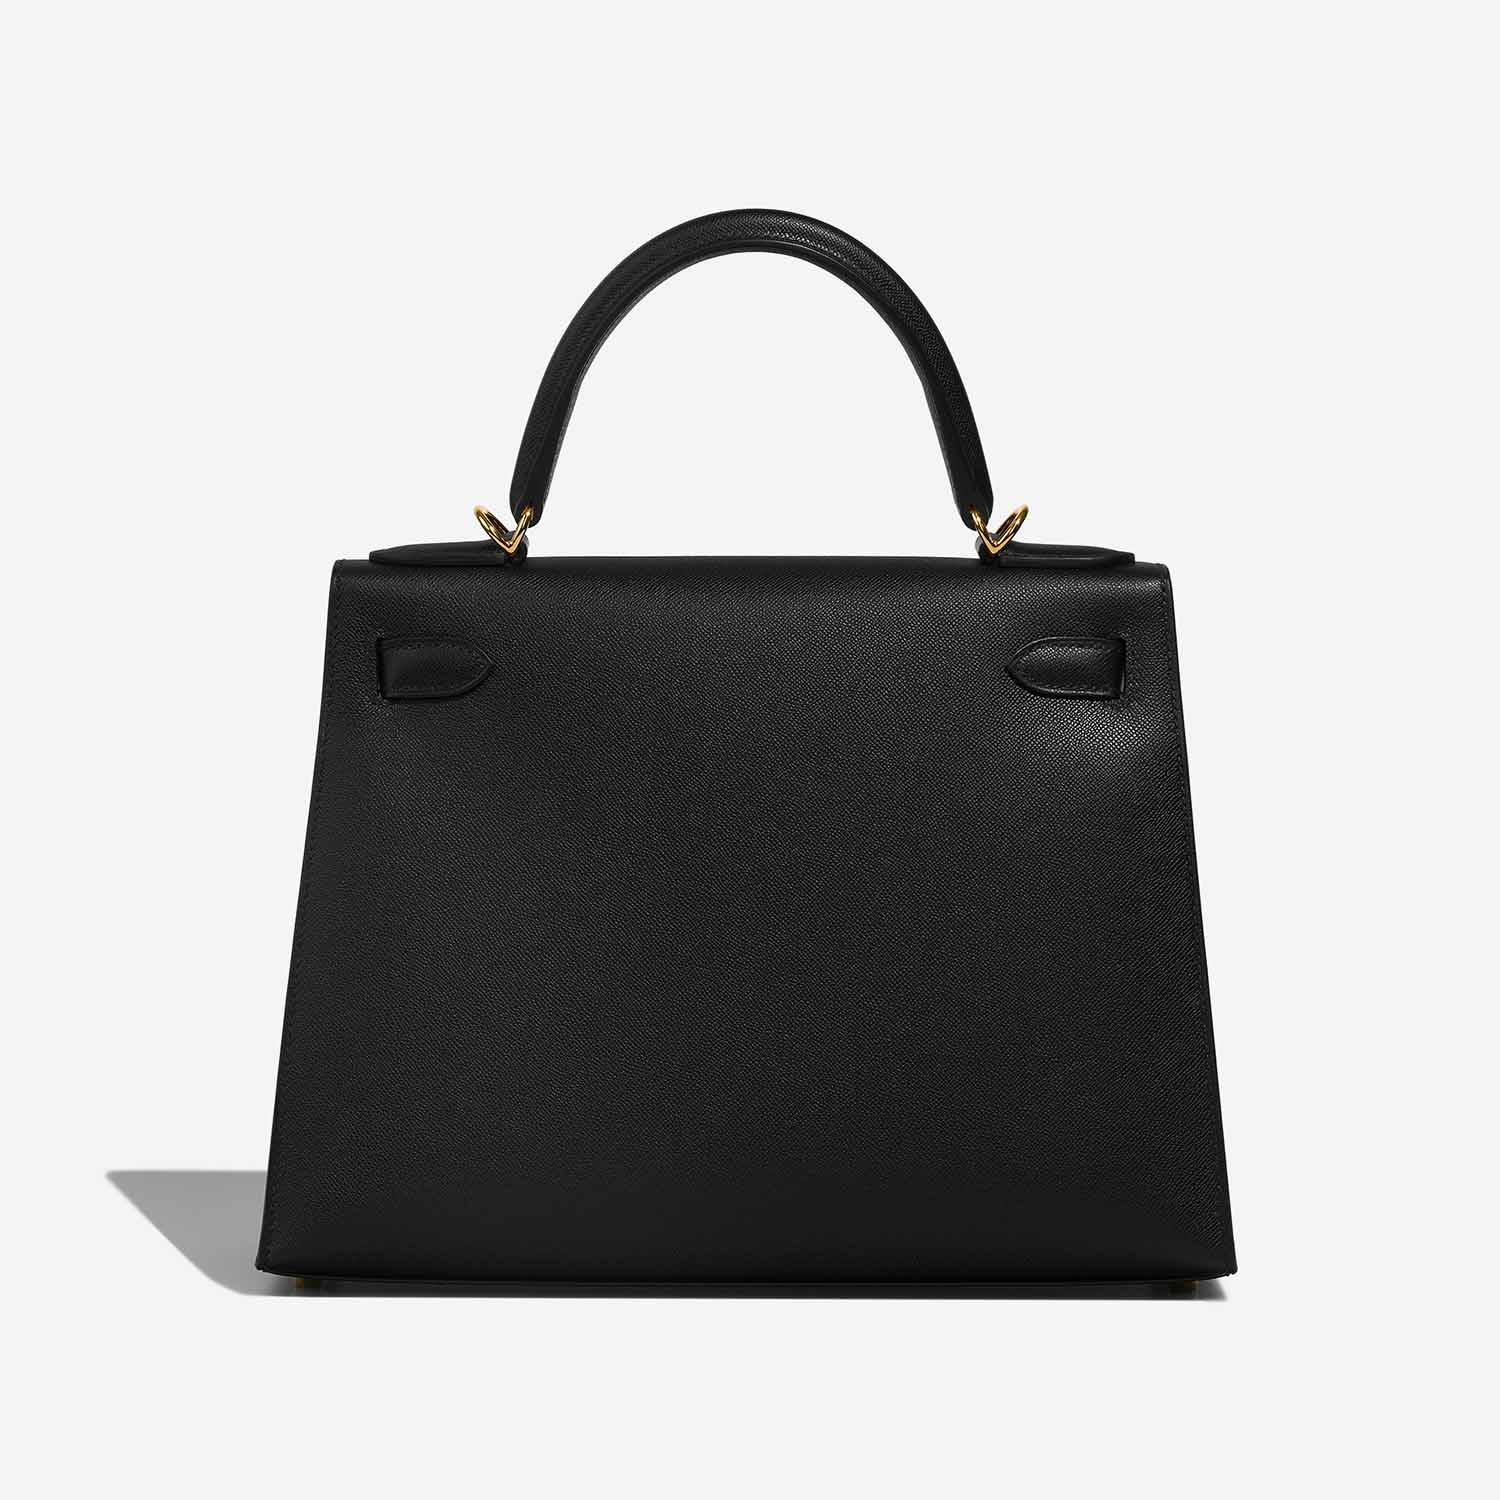 Hermès Kelly 28 Black Back | Verkaufen Sie Ihre Designertasche auf Saclab.com